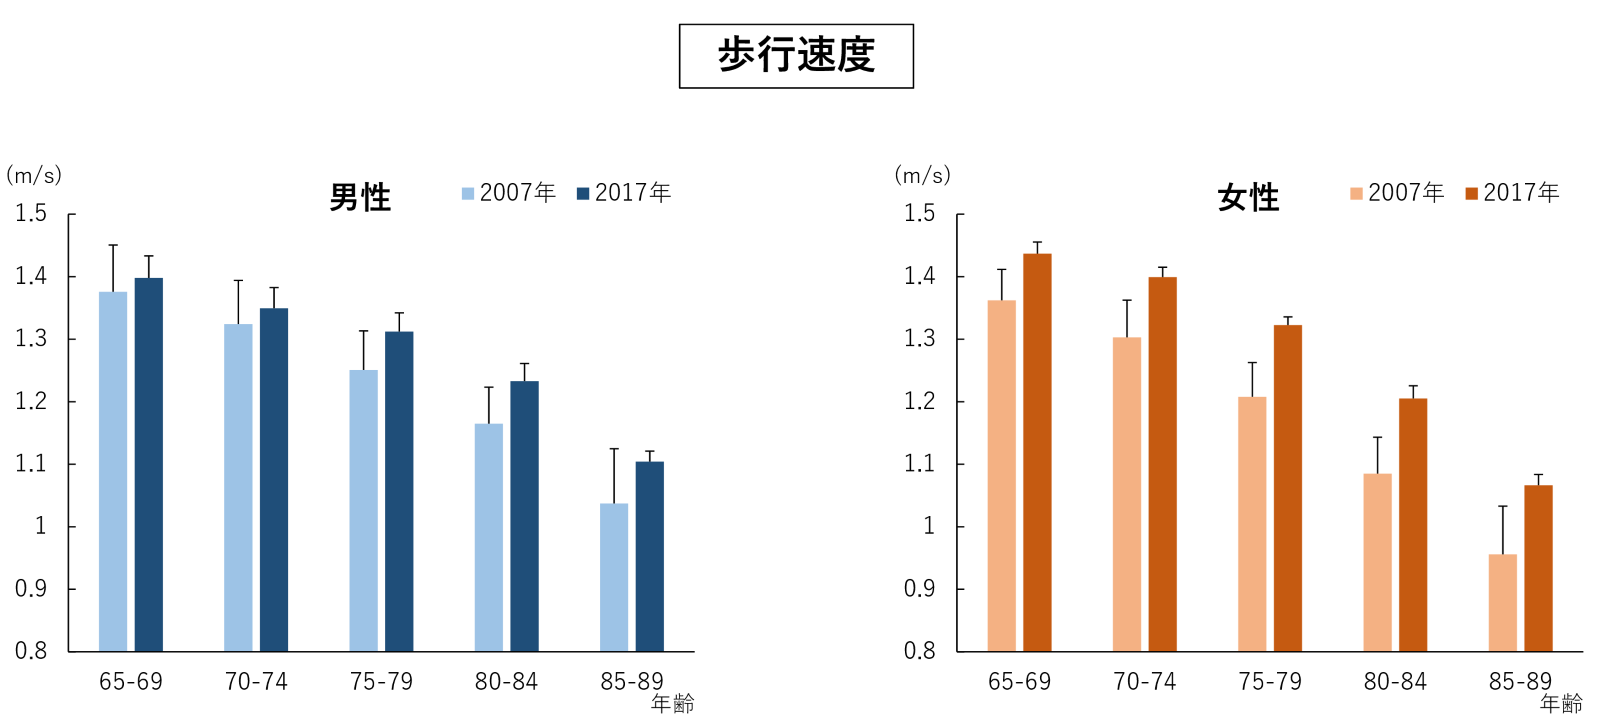 左の図：男性における2007年と2017年の歩行速度を65から69歳、70から74歳、75から79歳、80から84歳、85から89歳それぞれのグループで比較したグラフ。右の図：女性における2007年と2017年の歩行速度を65から69歳、70から74歳、75から79歳、80から84歳、85から89歳それぞれのグループで比較したグラフ。